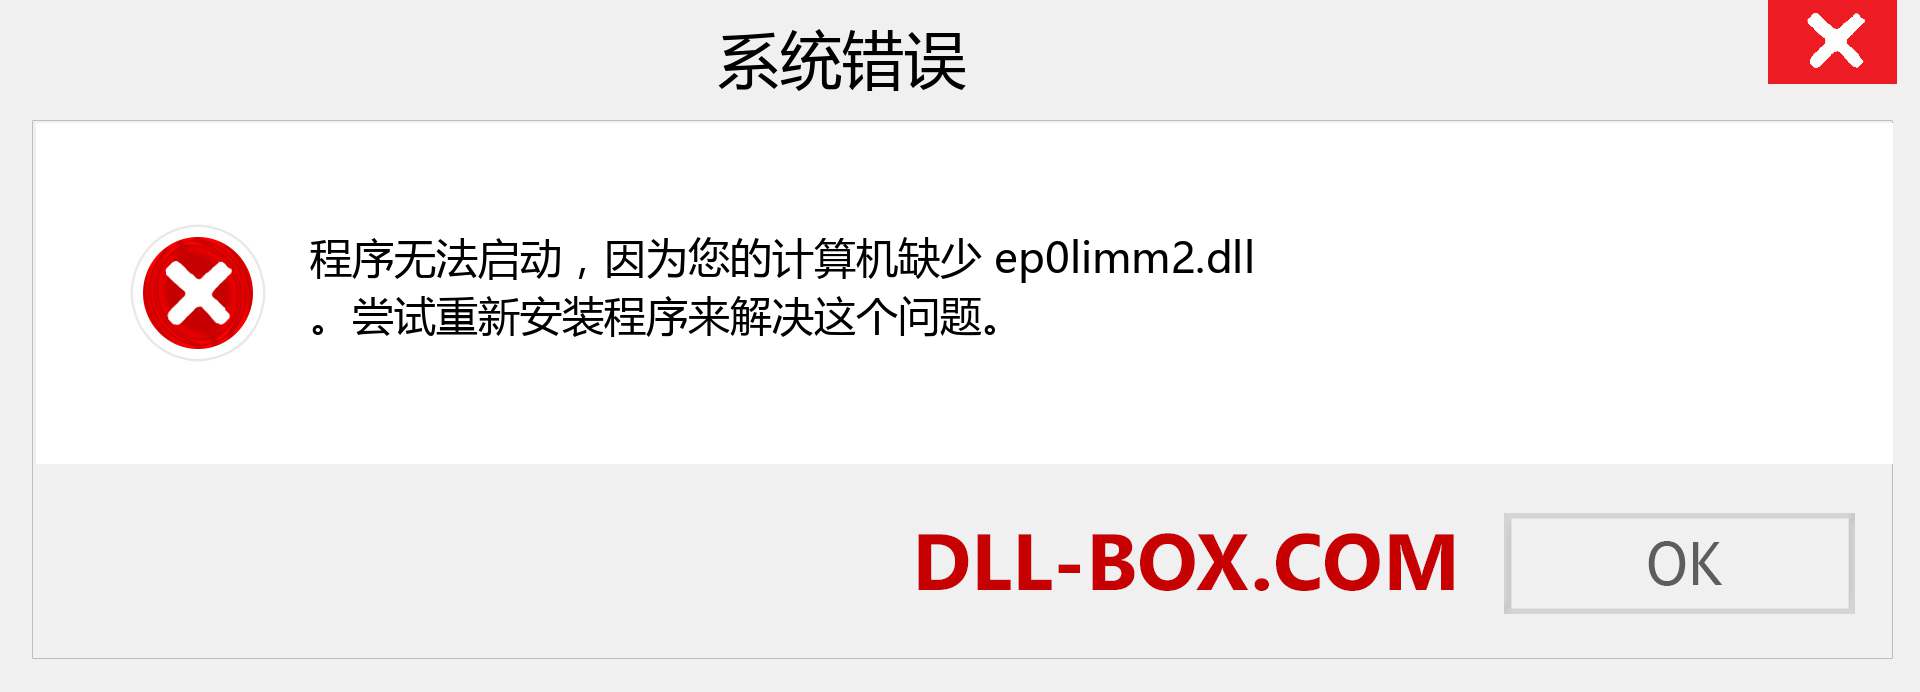 ep0limm2.dll 文件丢失？。 适用于 Windows 7、8、10 的下载 - 修复 Windows、照片、图像上的 ep0limm2 dll 丢失错误